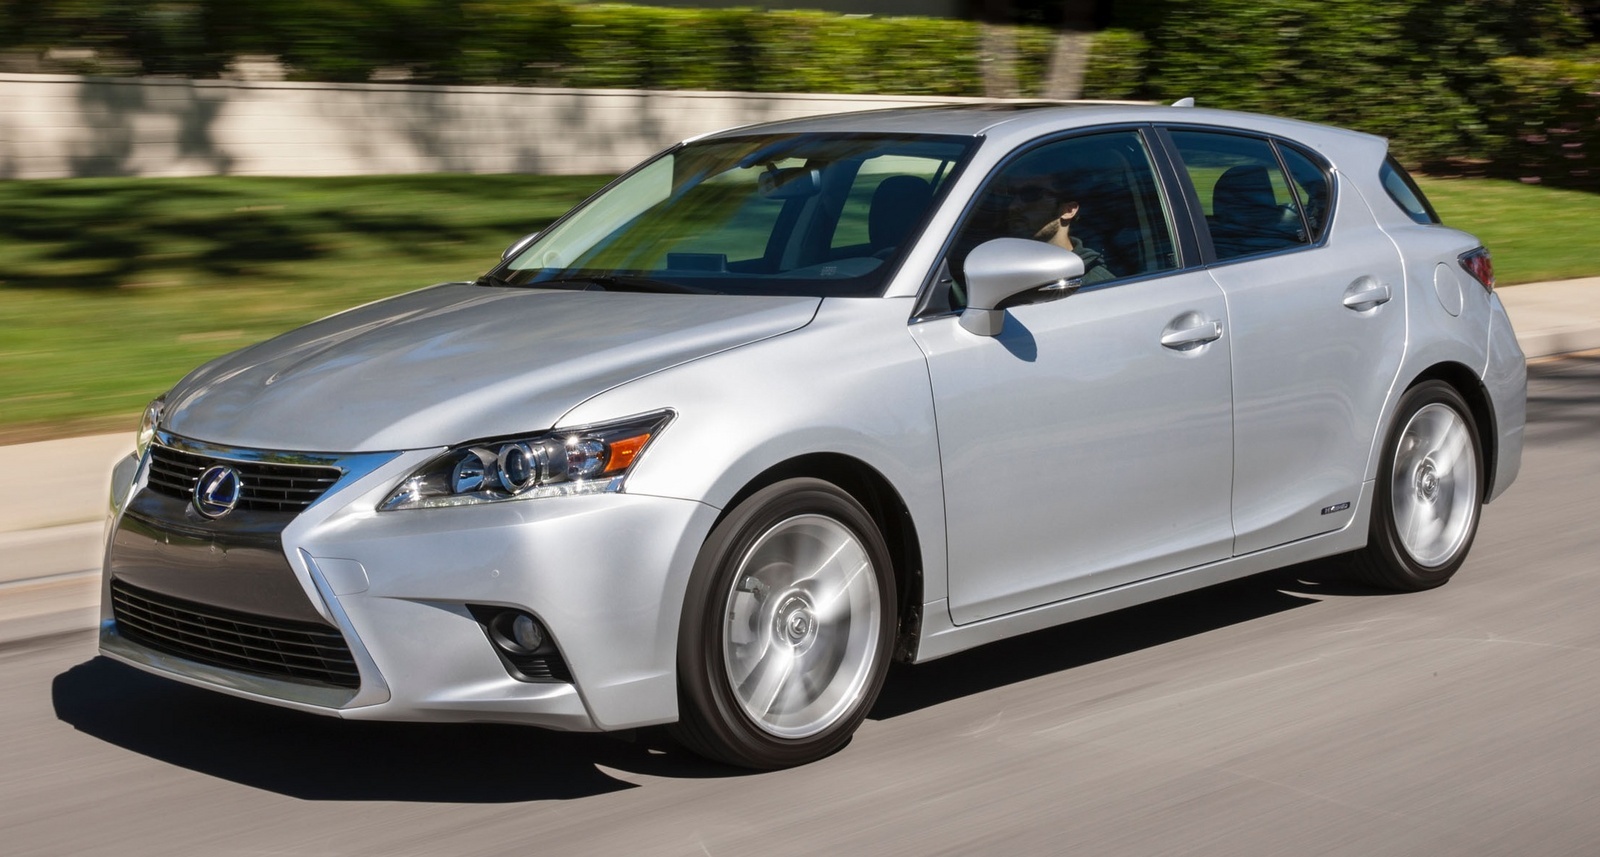 2015 Lexus CT Hybrid: Prices, Reviews & Pictures - CarGurus